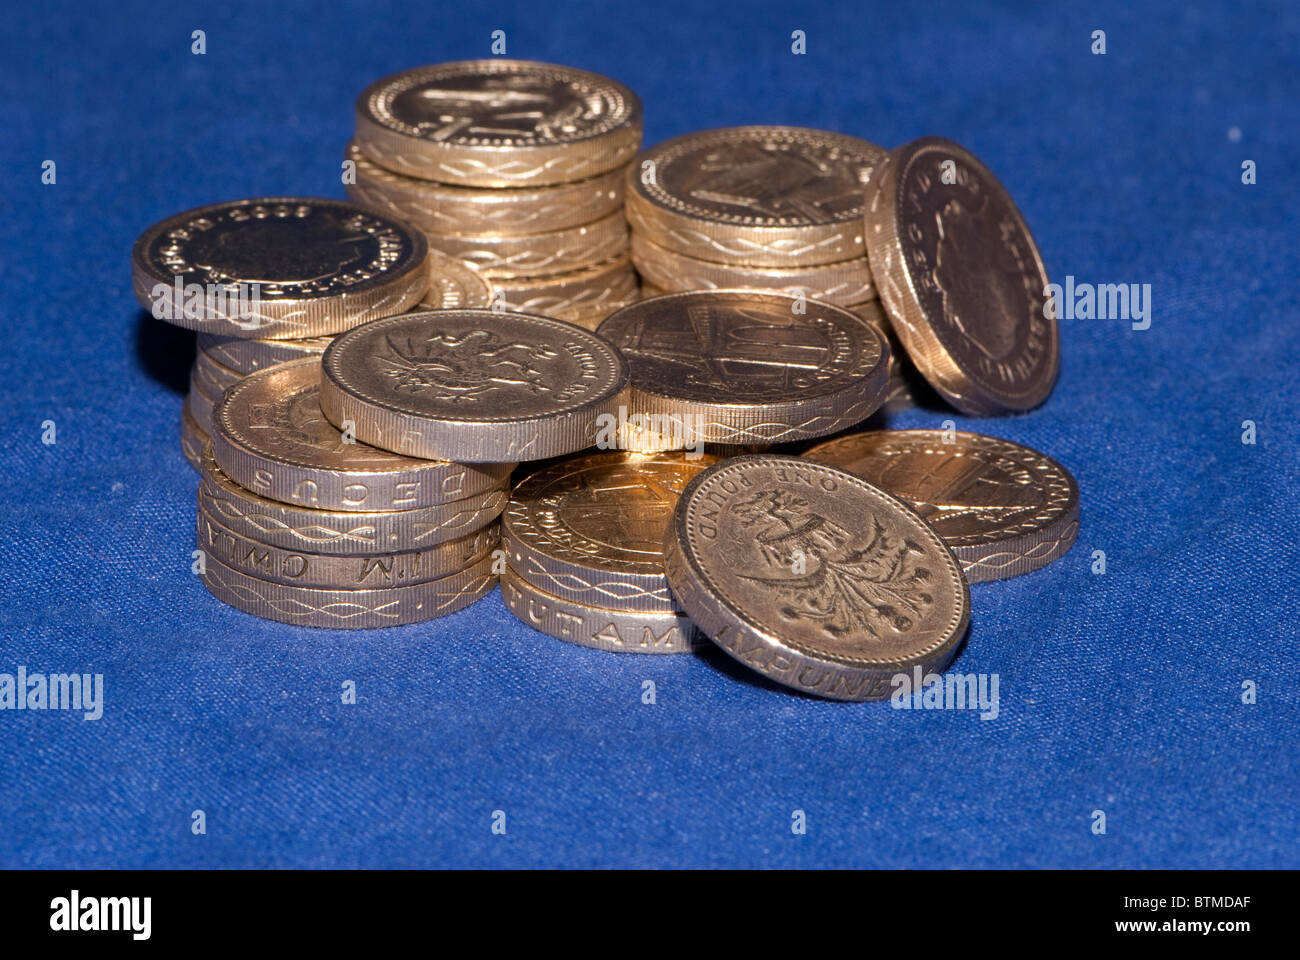 Photos du Royaume-uni monnaie, monnaies et billets Banque D'Images